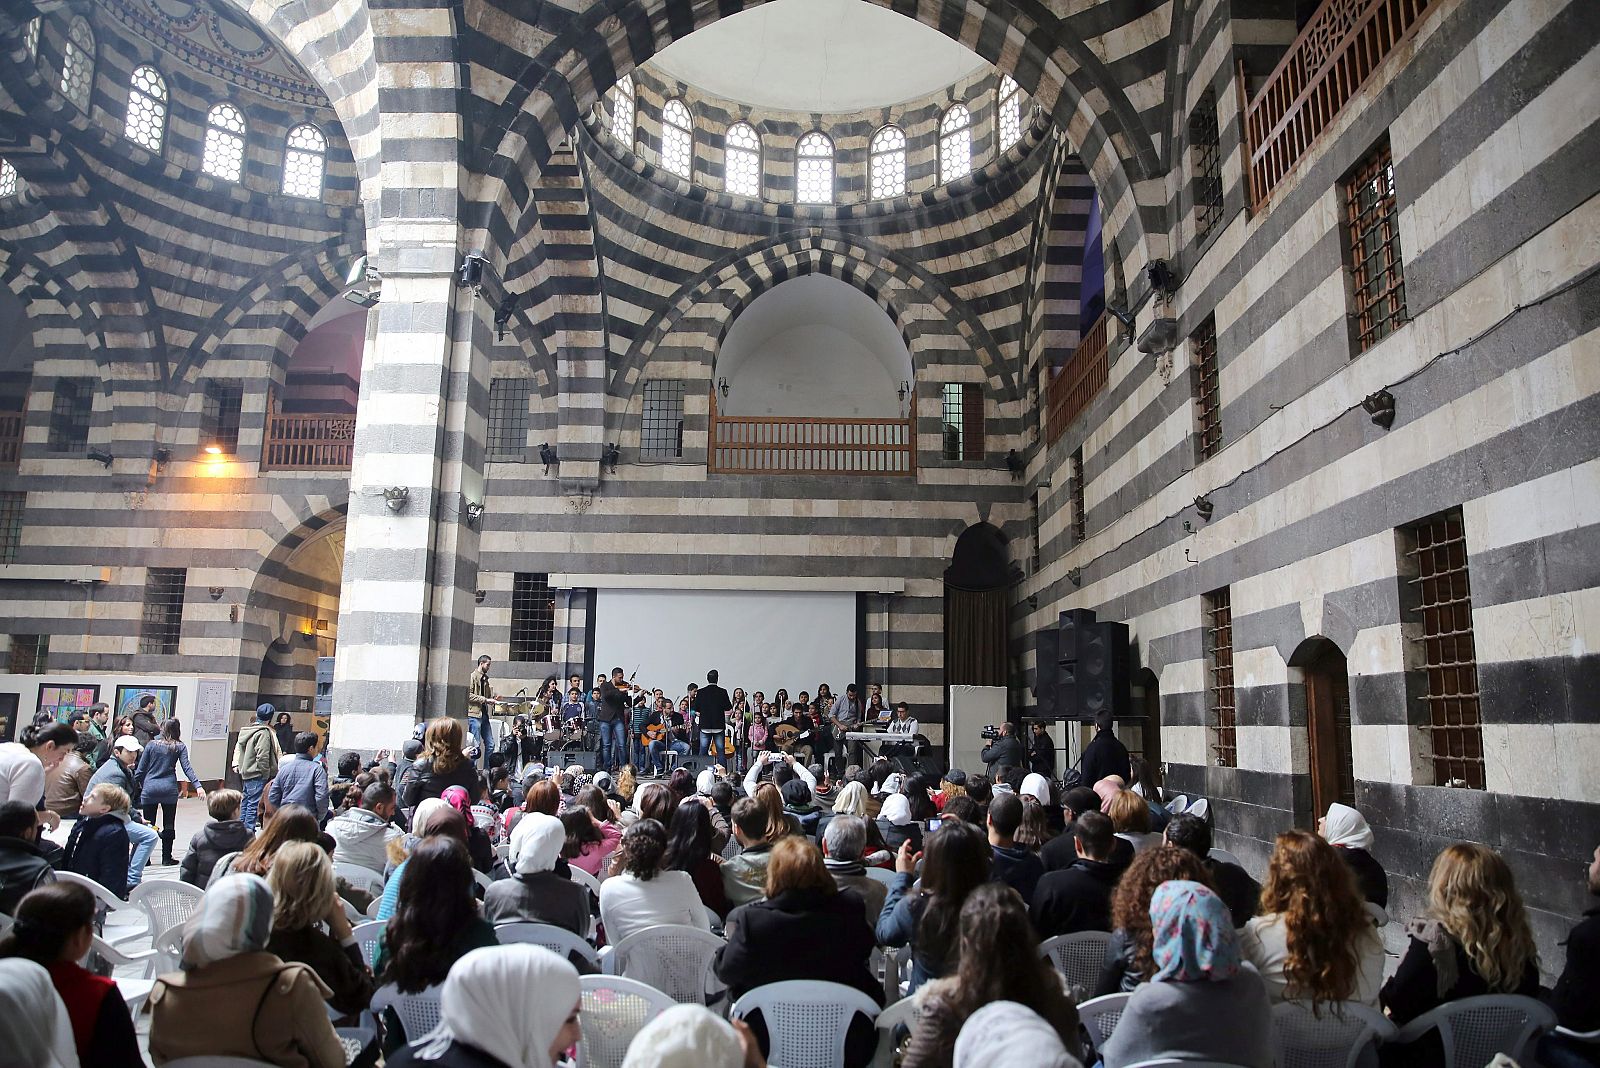 Ciudadanos sirios aisten a un concierto en Damasco una actividad promovida por la ONU en favor de los damnificados por la guerra en Siria.